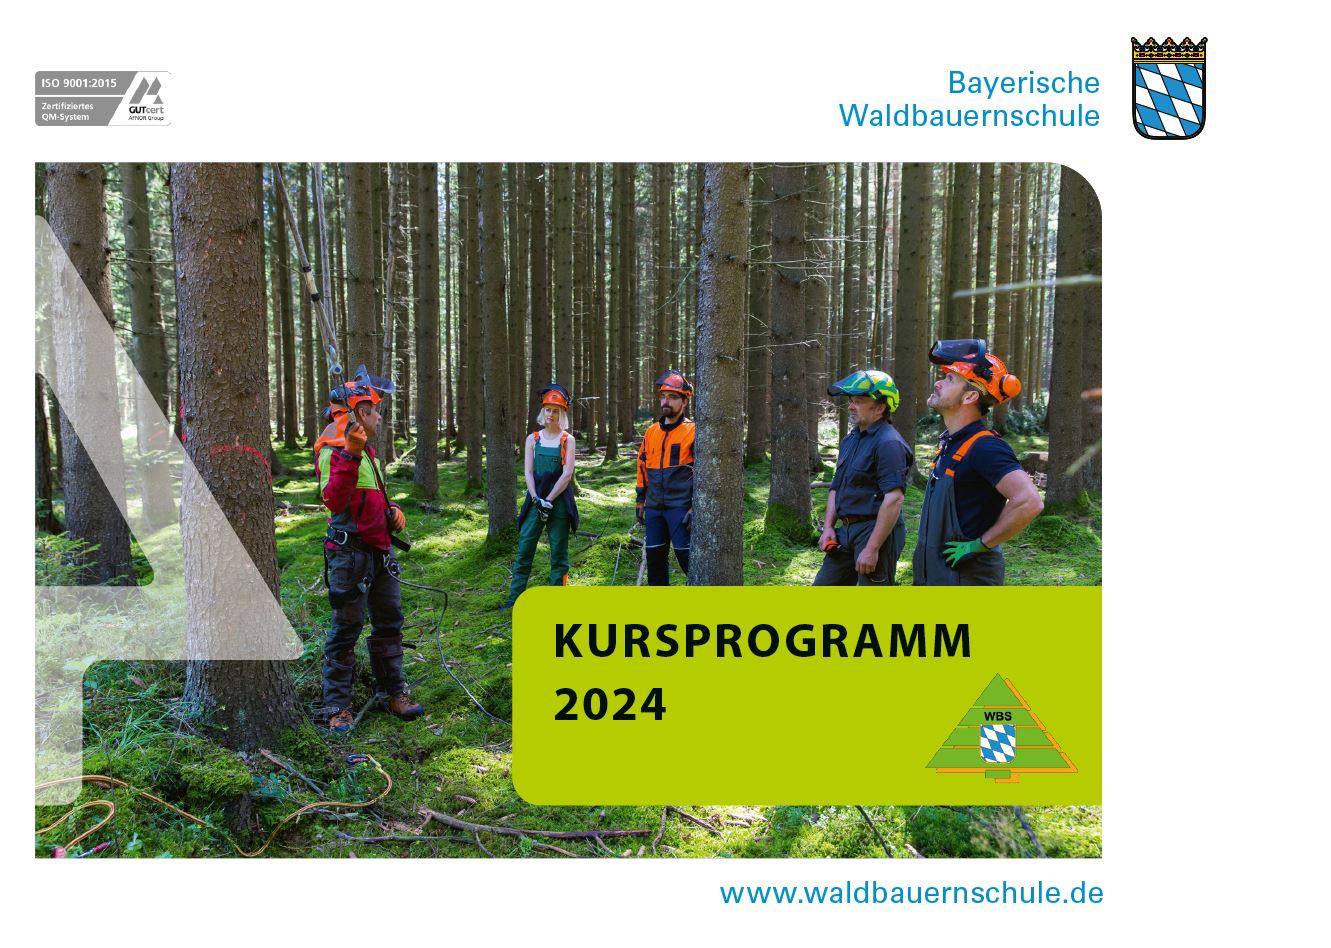 Waldbauernschule Kursprogramm 2024